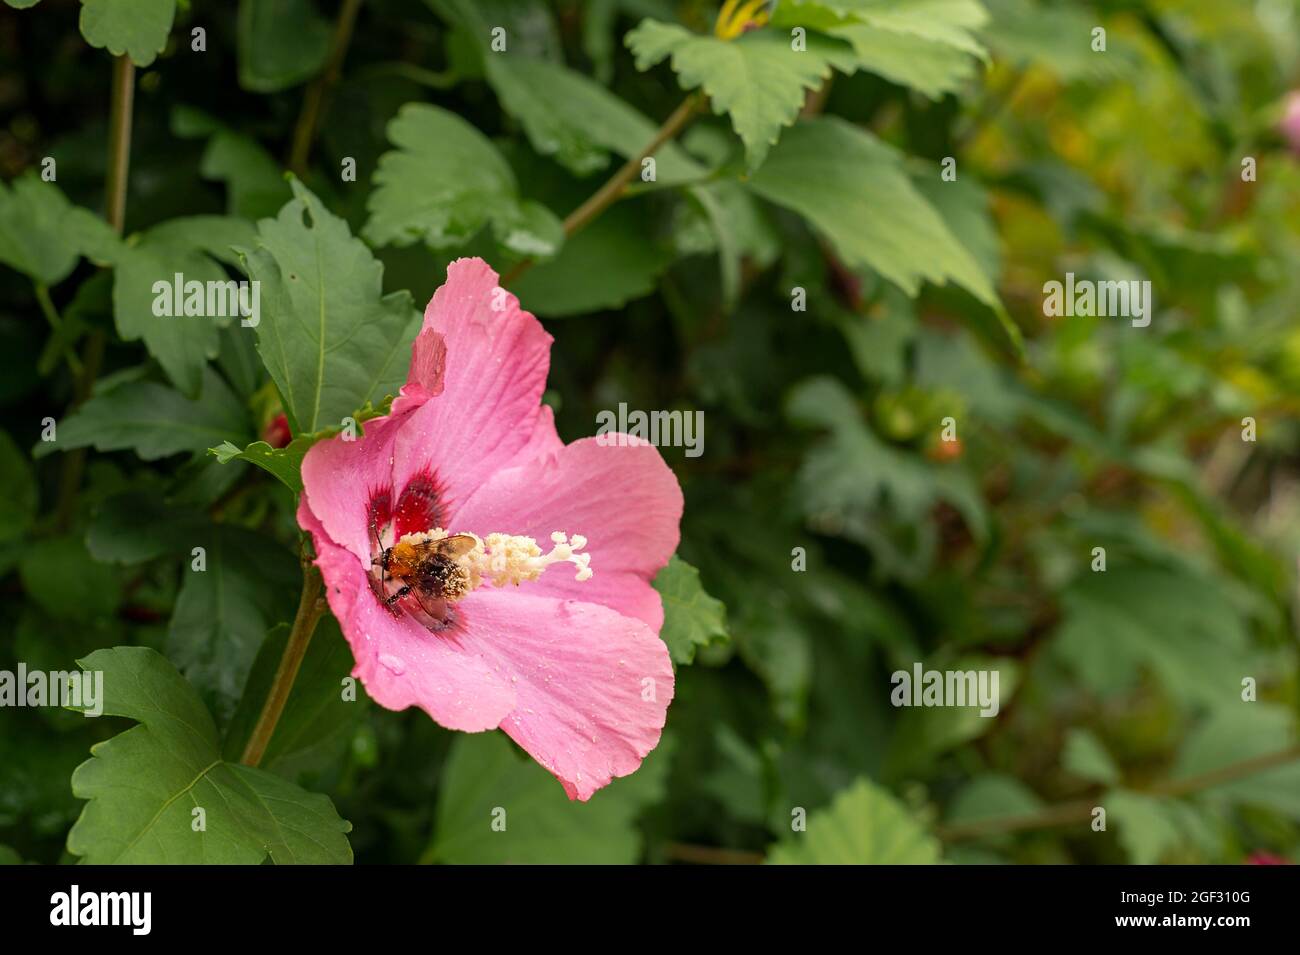 Bienen sammeln eine Hibiskusblüte, Elsass, Frankreich. In der Hecke eines Gartens zog diese Hibiskusblüte eine Biene an, deren Bauch mit Pollen beladen war. Stockfoto